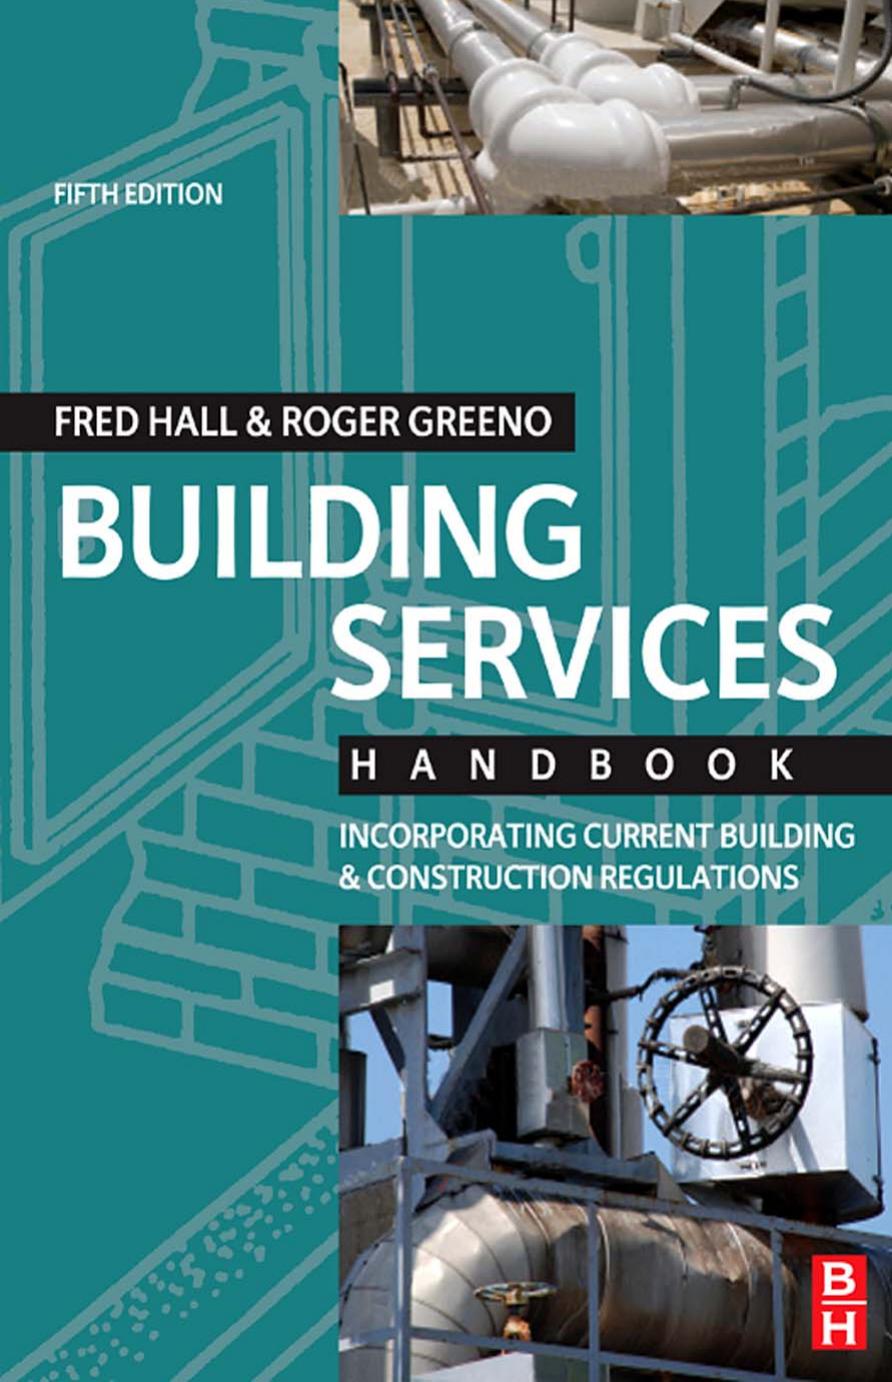 BUILDING SERVICES HANDBOOK, Fifth Edition